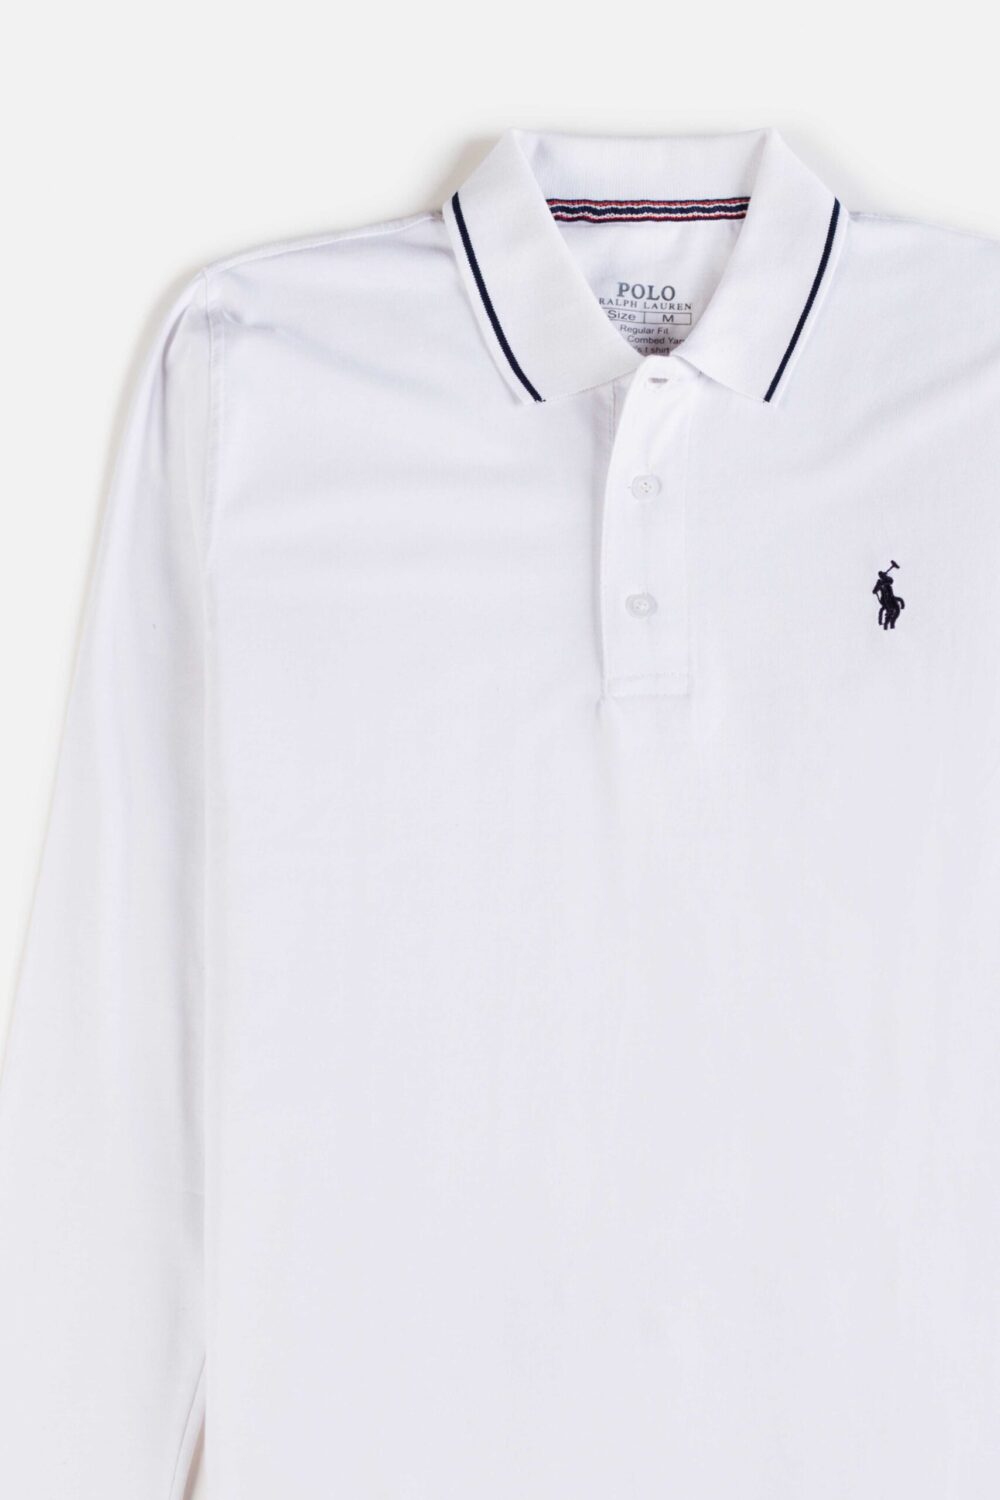 RL Premium Cotton Full Polo – White